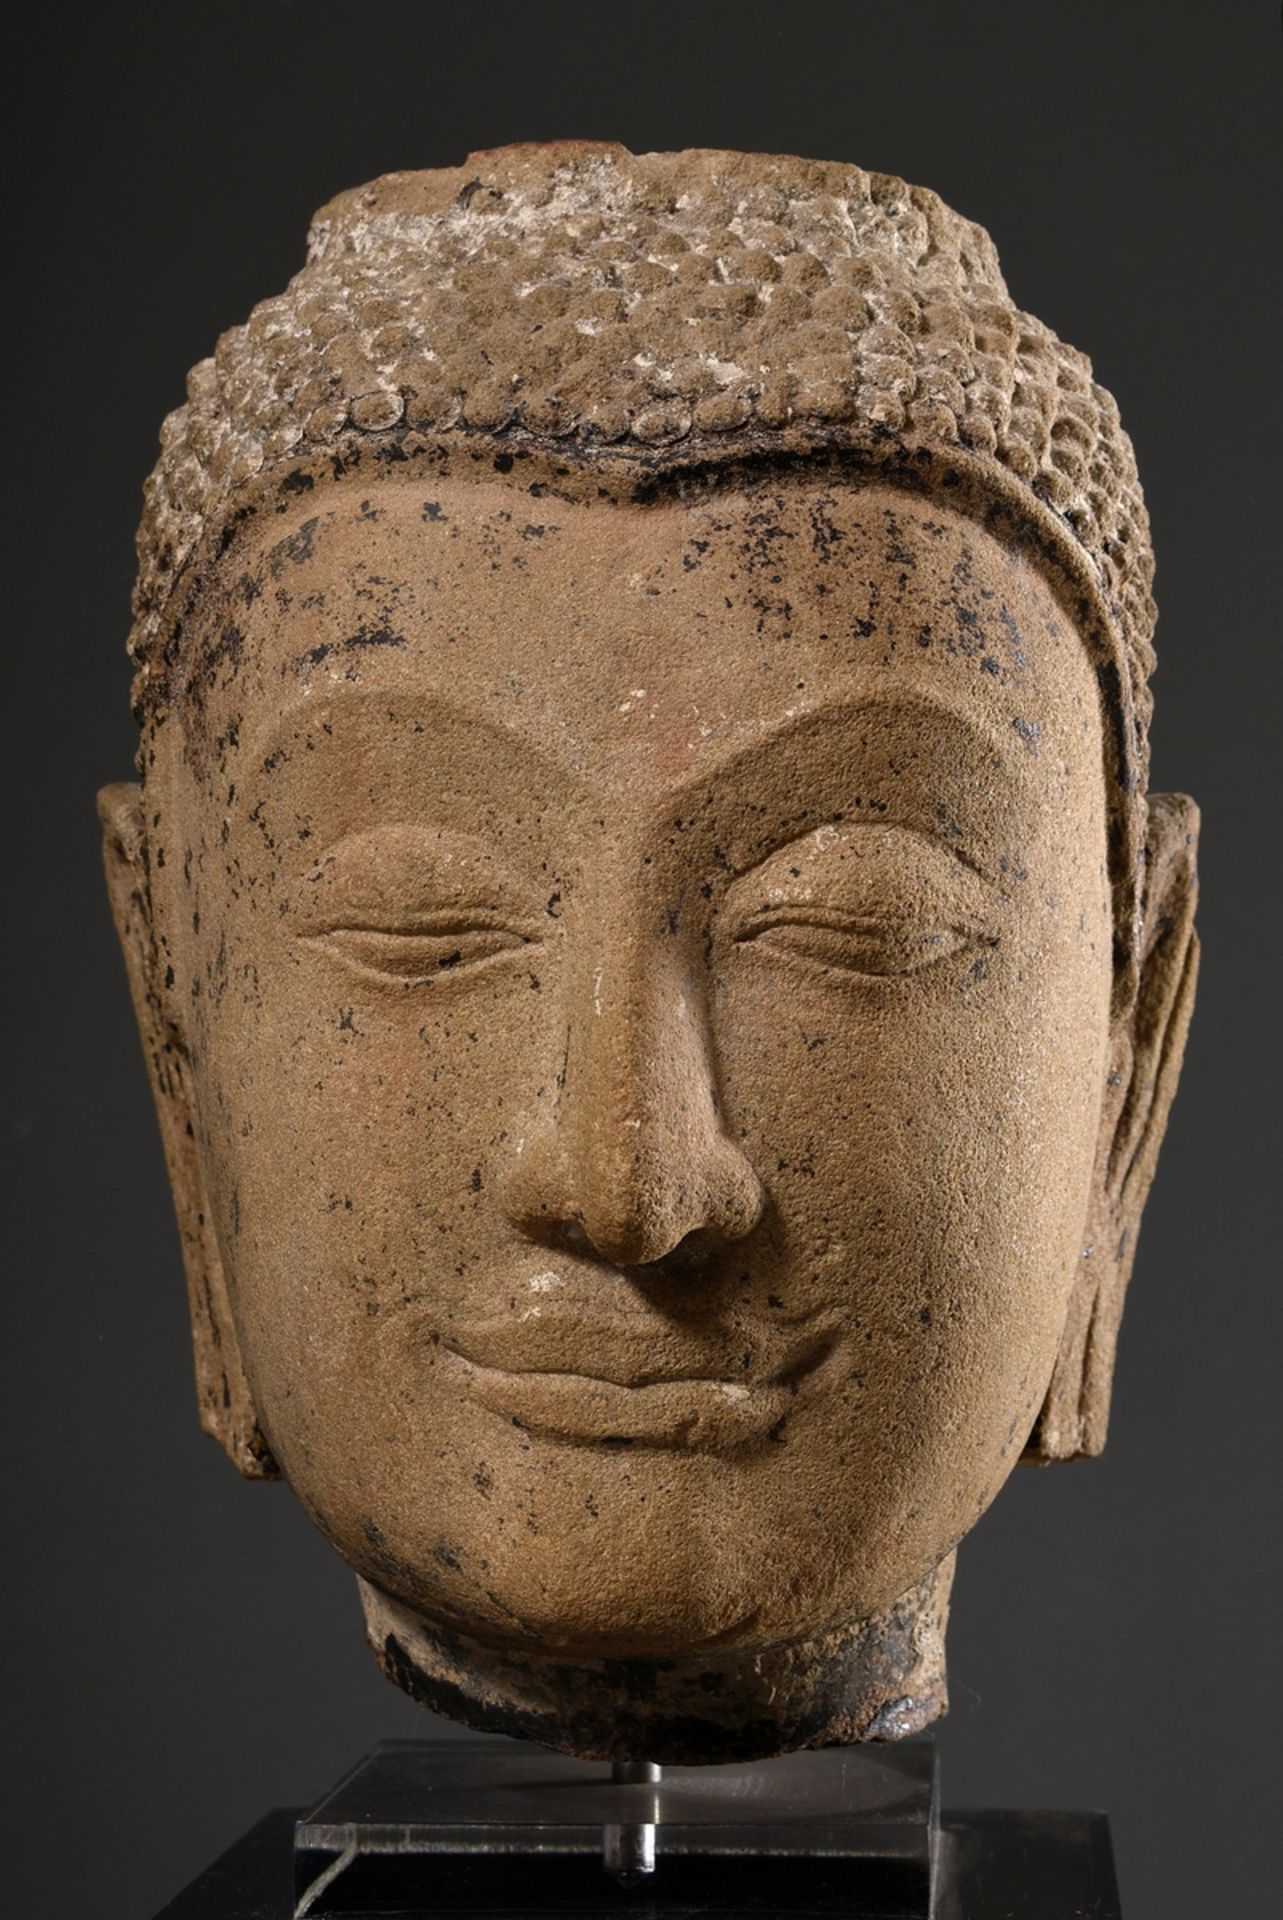 Ayutthaya Sandstein Buddha Kopf mit Resten von farbiger Bemalung, Thailand 15.-17. Jh., auf Plexigl - Bild 4 aus 7